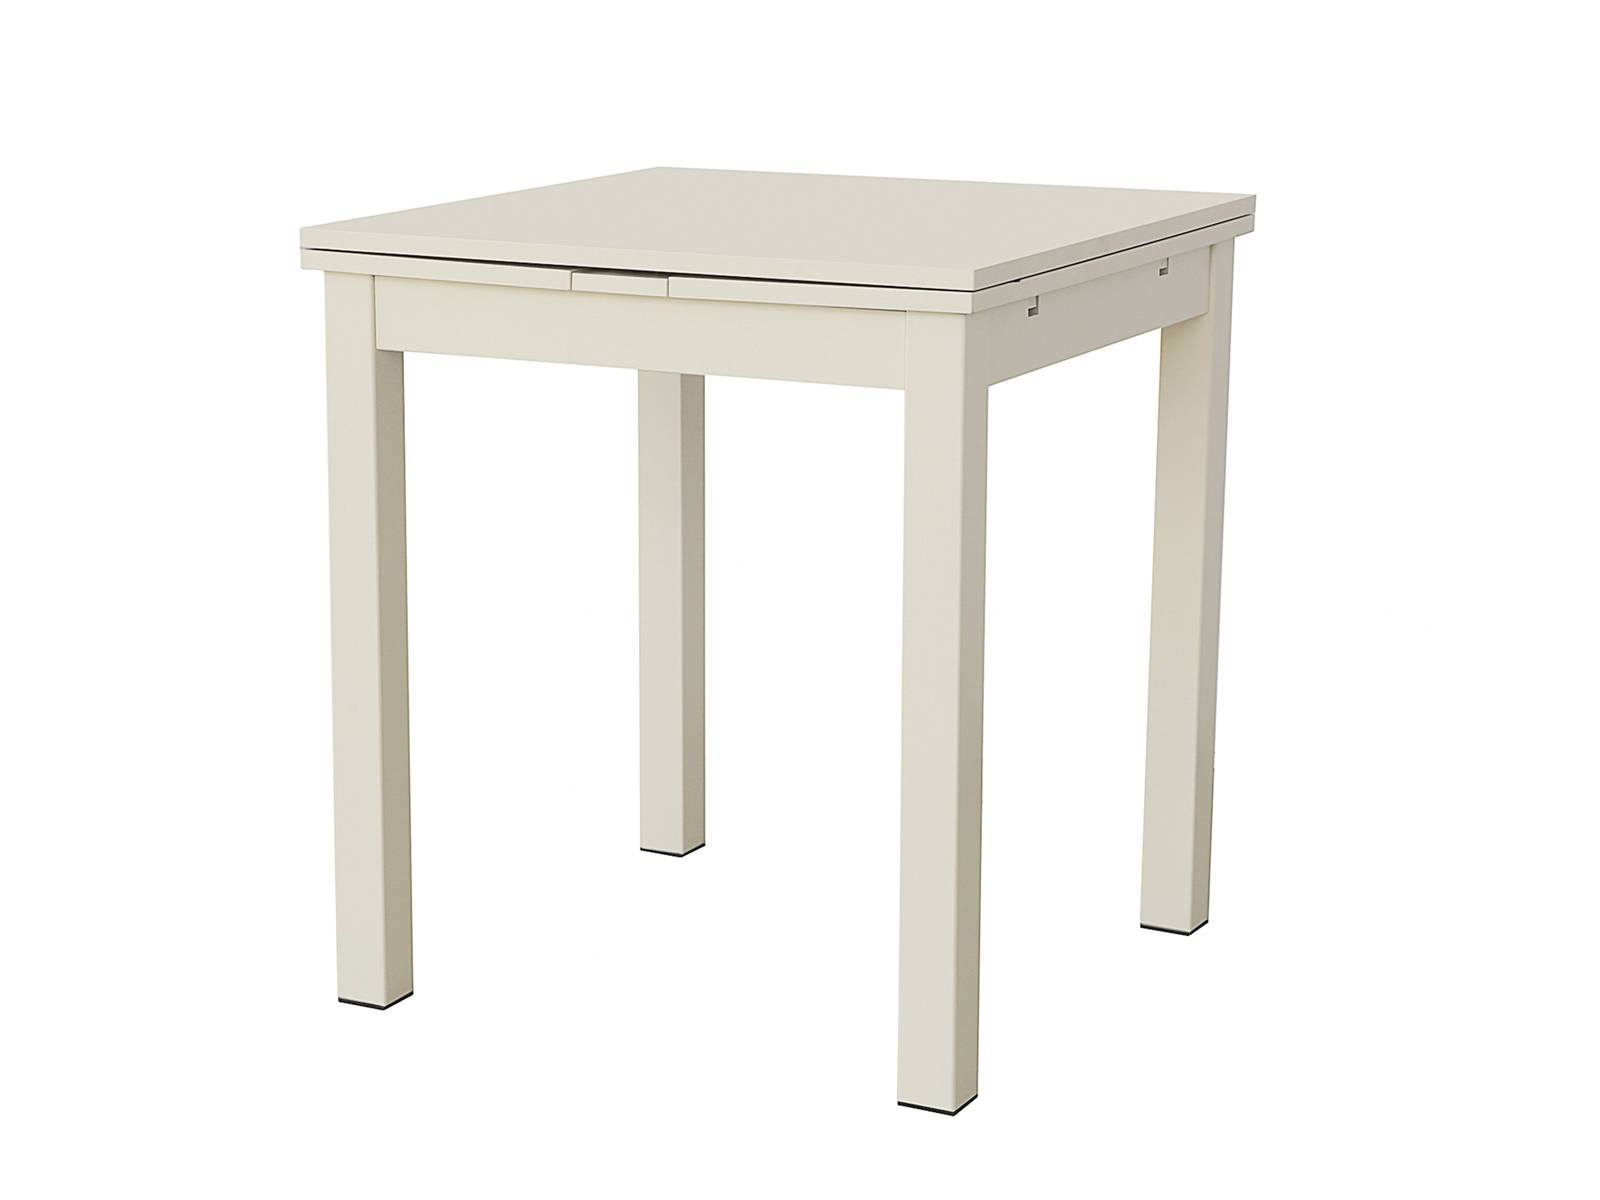 Кухонный стол Фиоре 1 Белый, Массив Бук стол кухонный прямоугольный 1 1х0 73 м белый бук table 110 15356